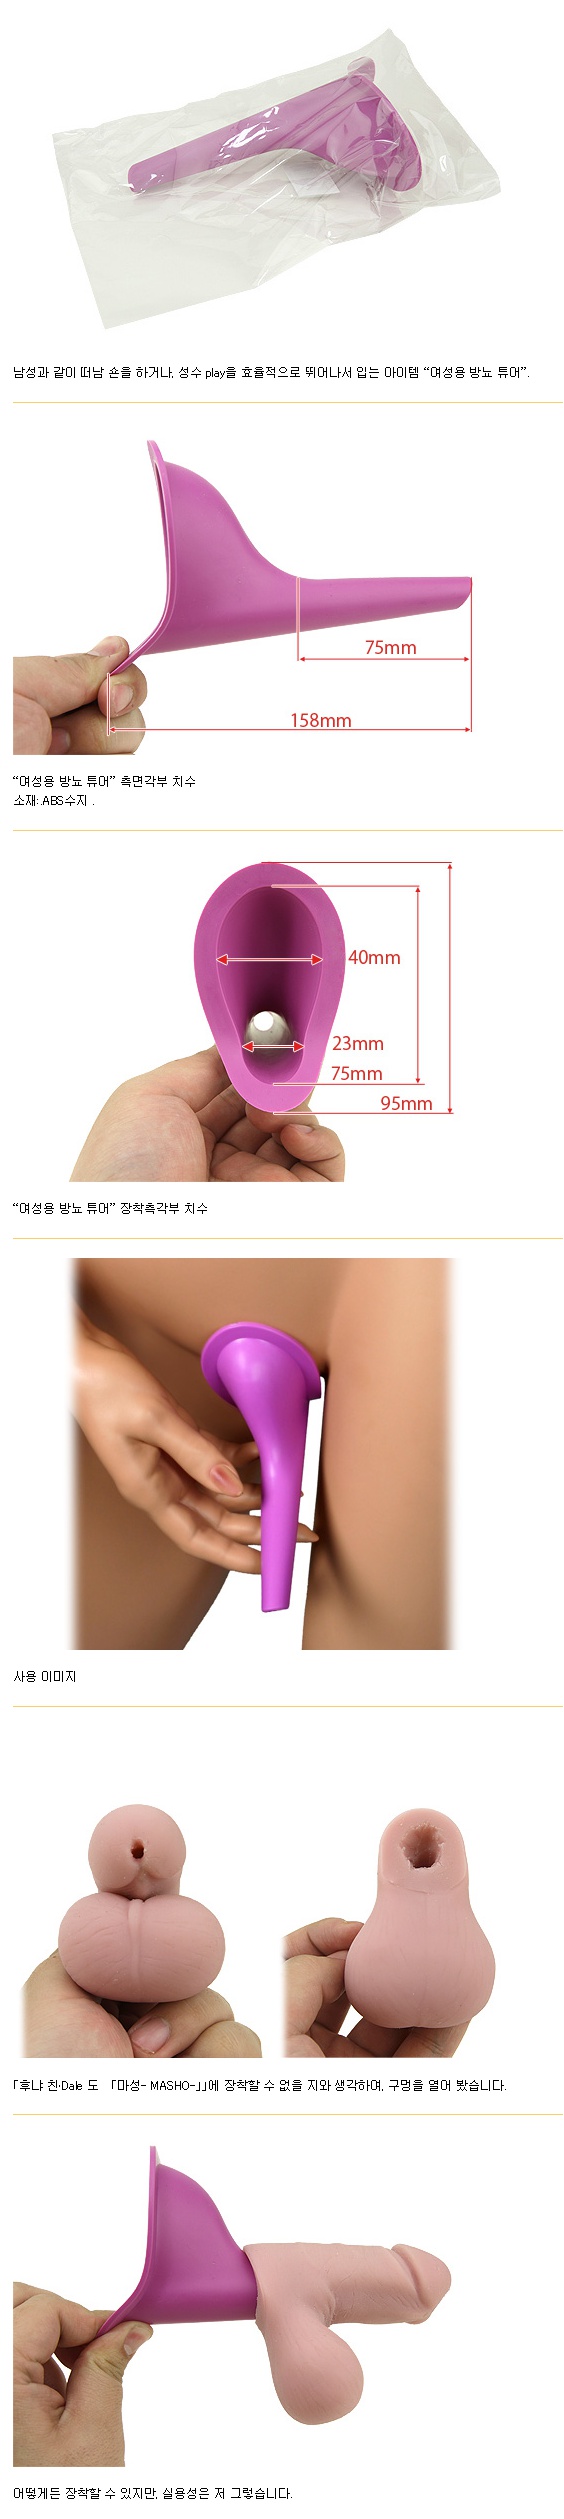      [일본 직수입] 여성용 방뇨 도구(女性用放尿ツール)     